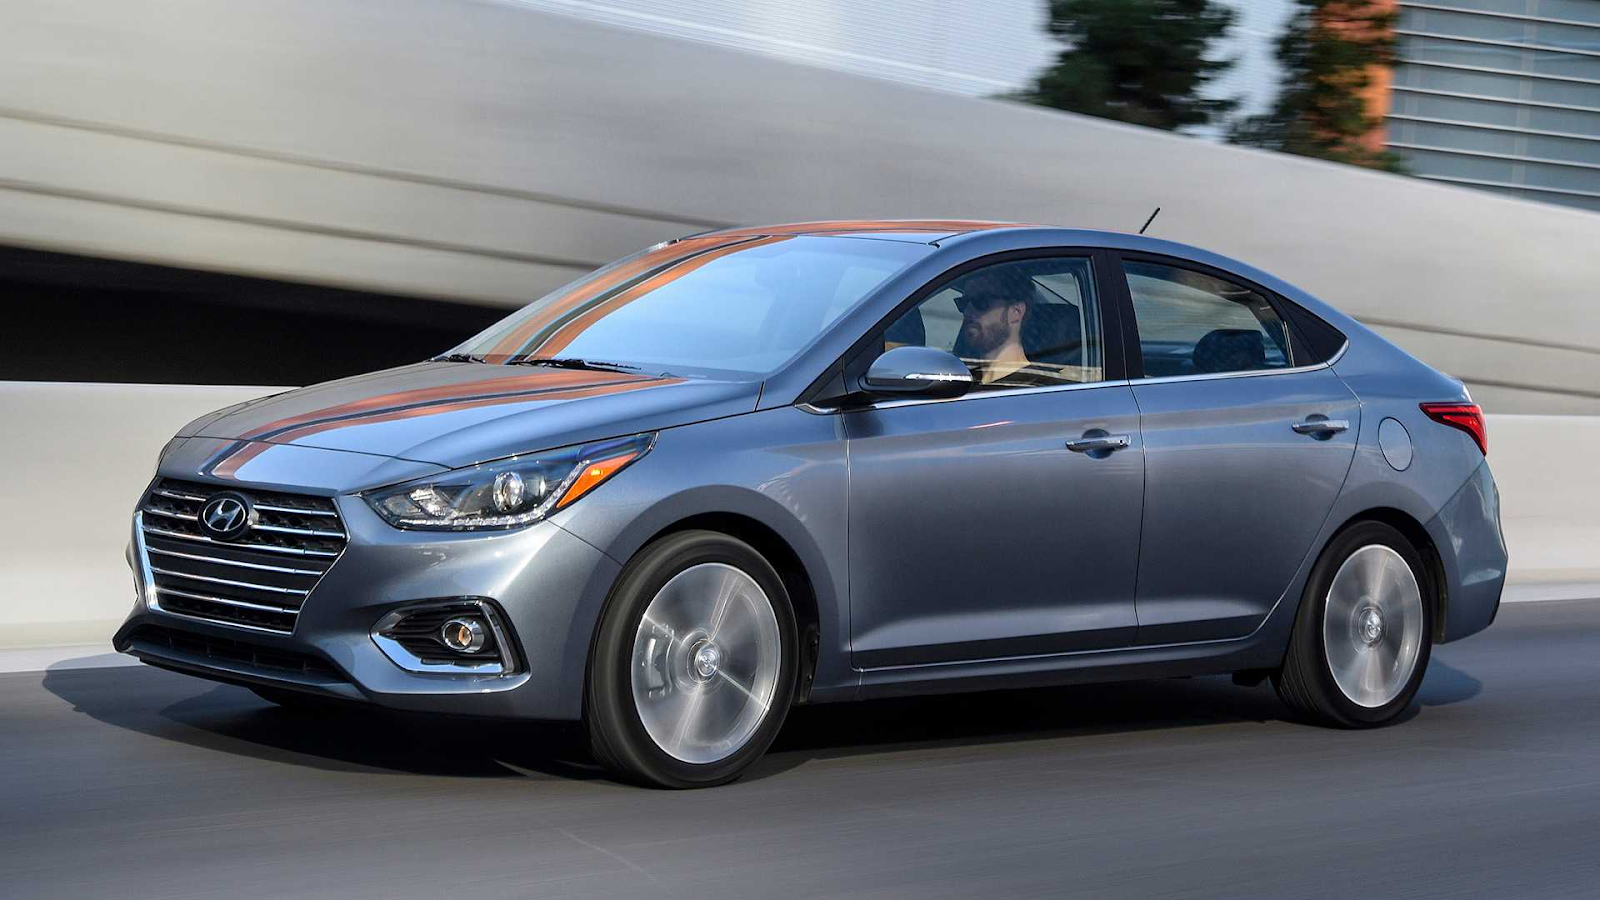 Cùng review chi tiết dòng xe Hyundai Accent 2020 HOT hiện nay